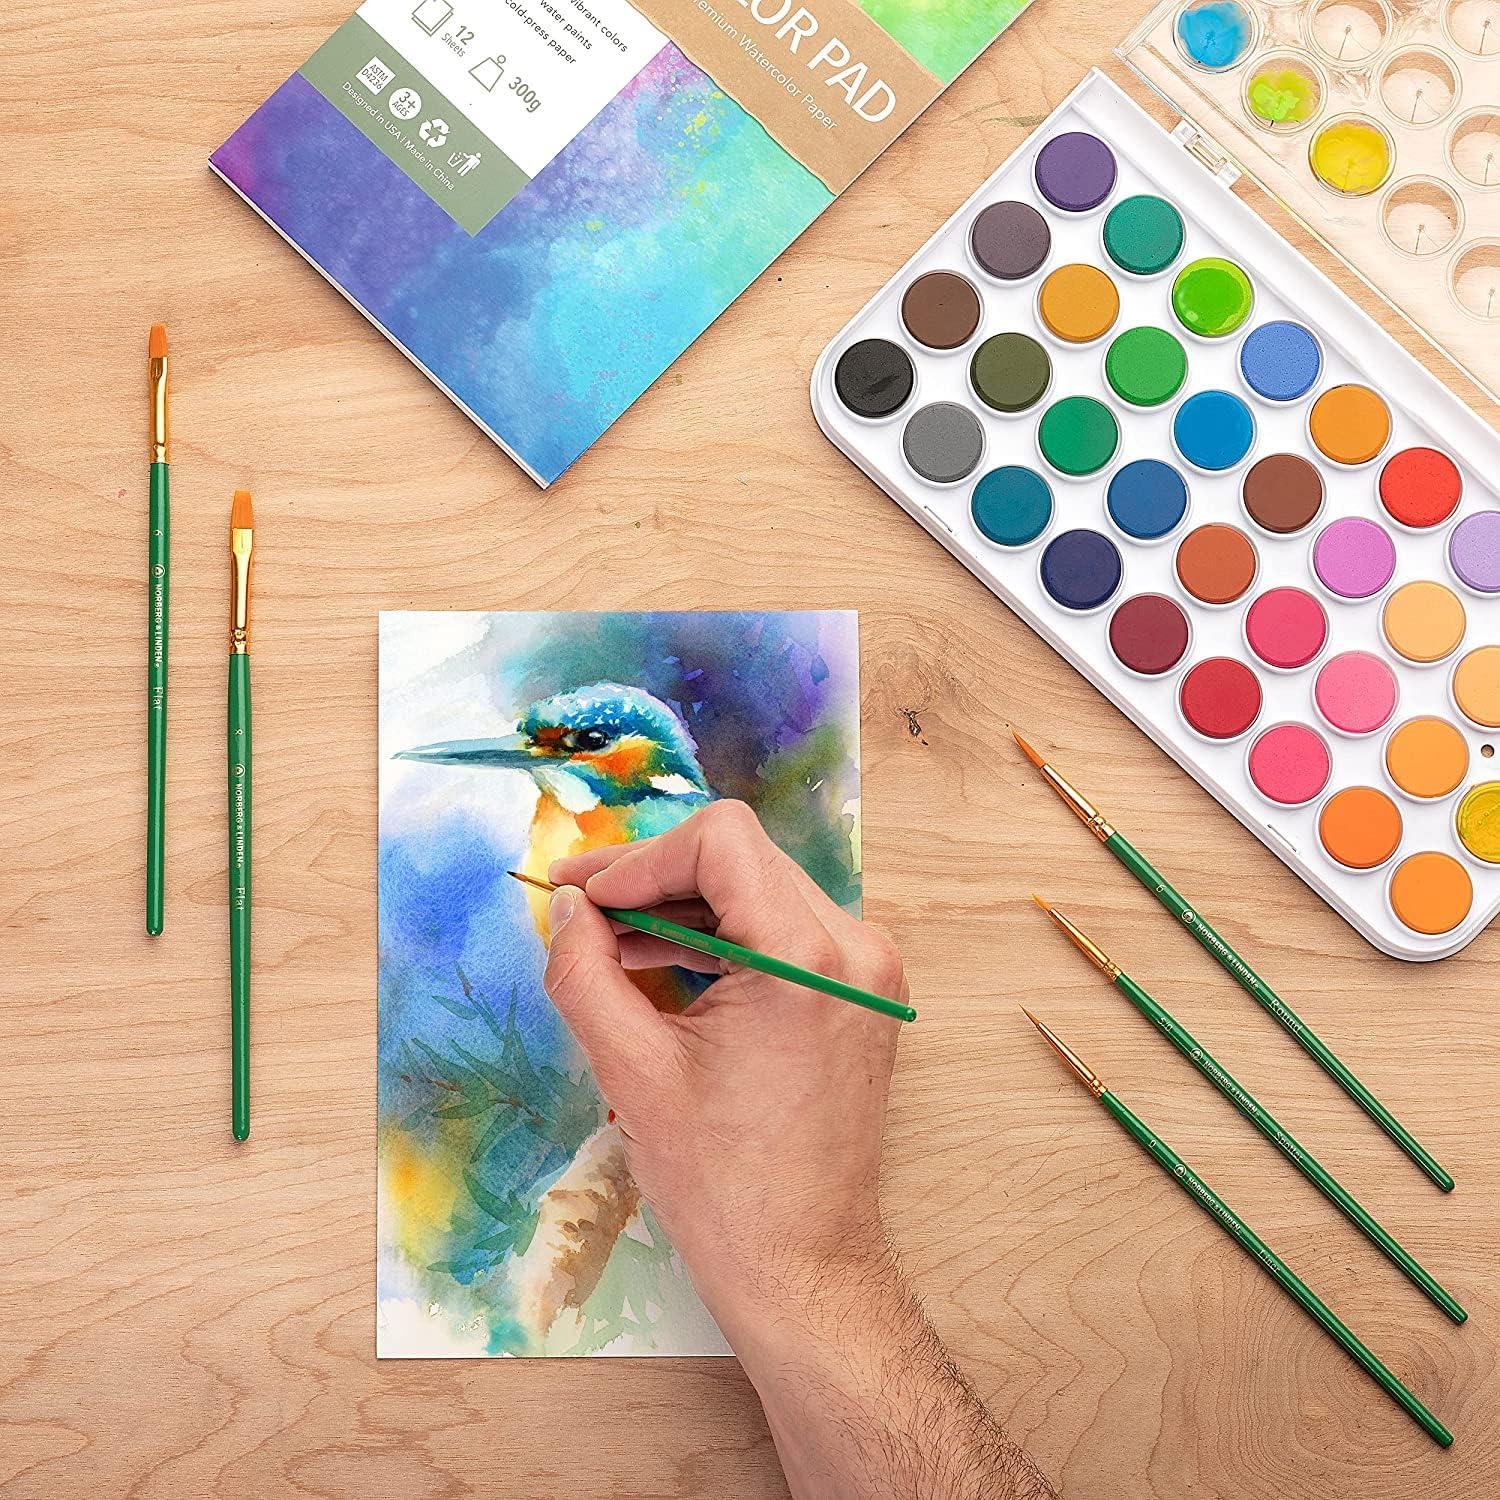  Watercolor Paints for Adults,Watercolor Paint Set, 12